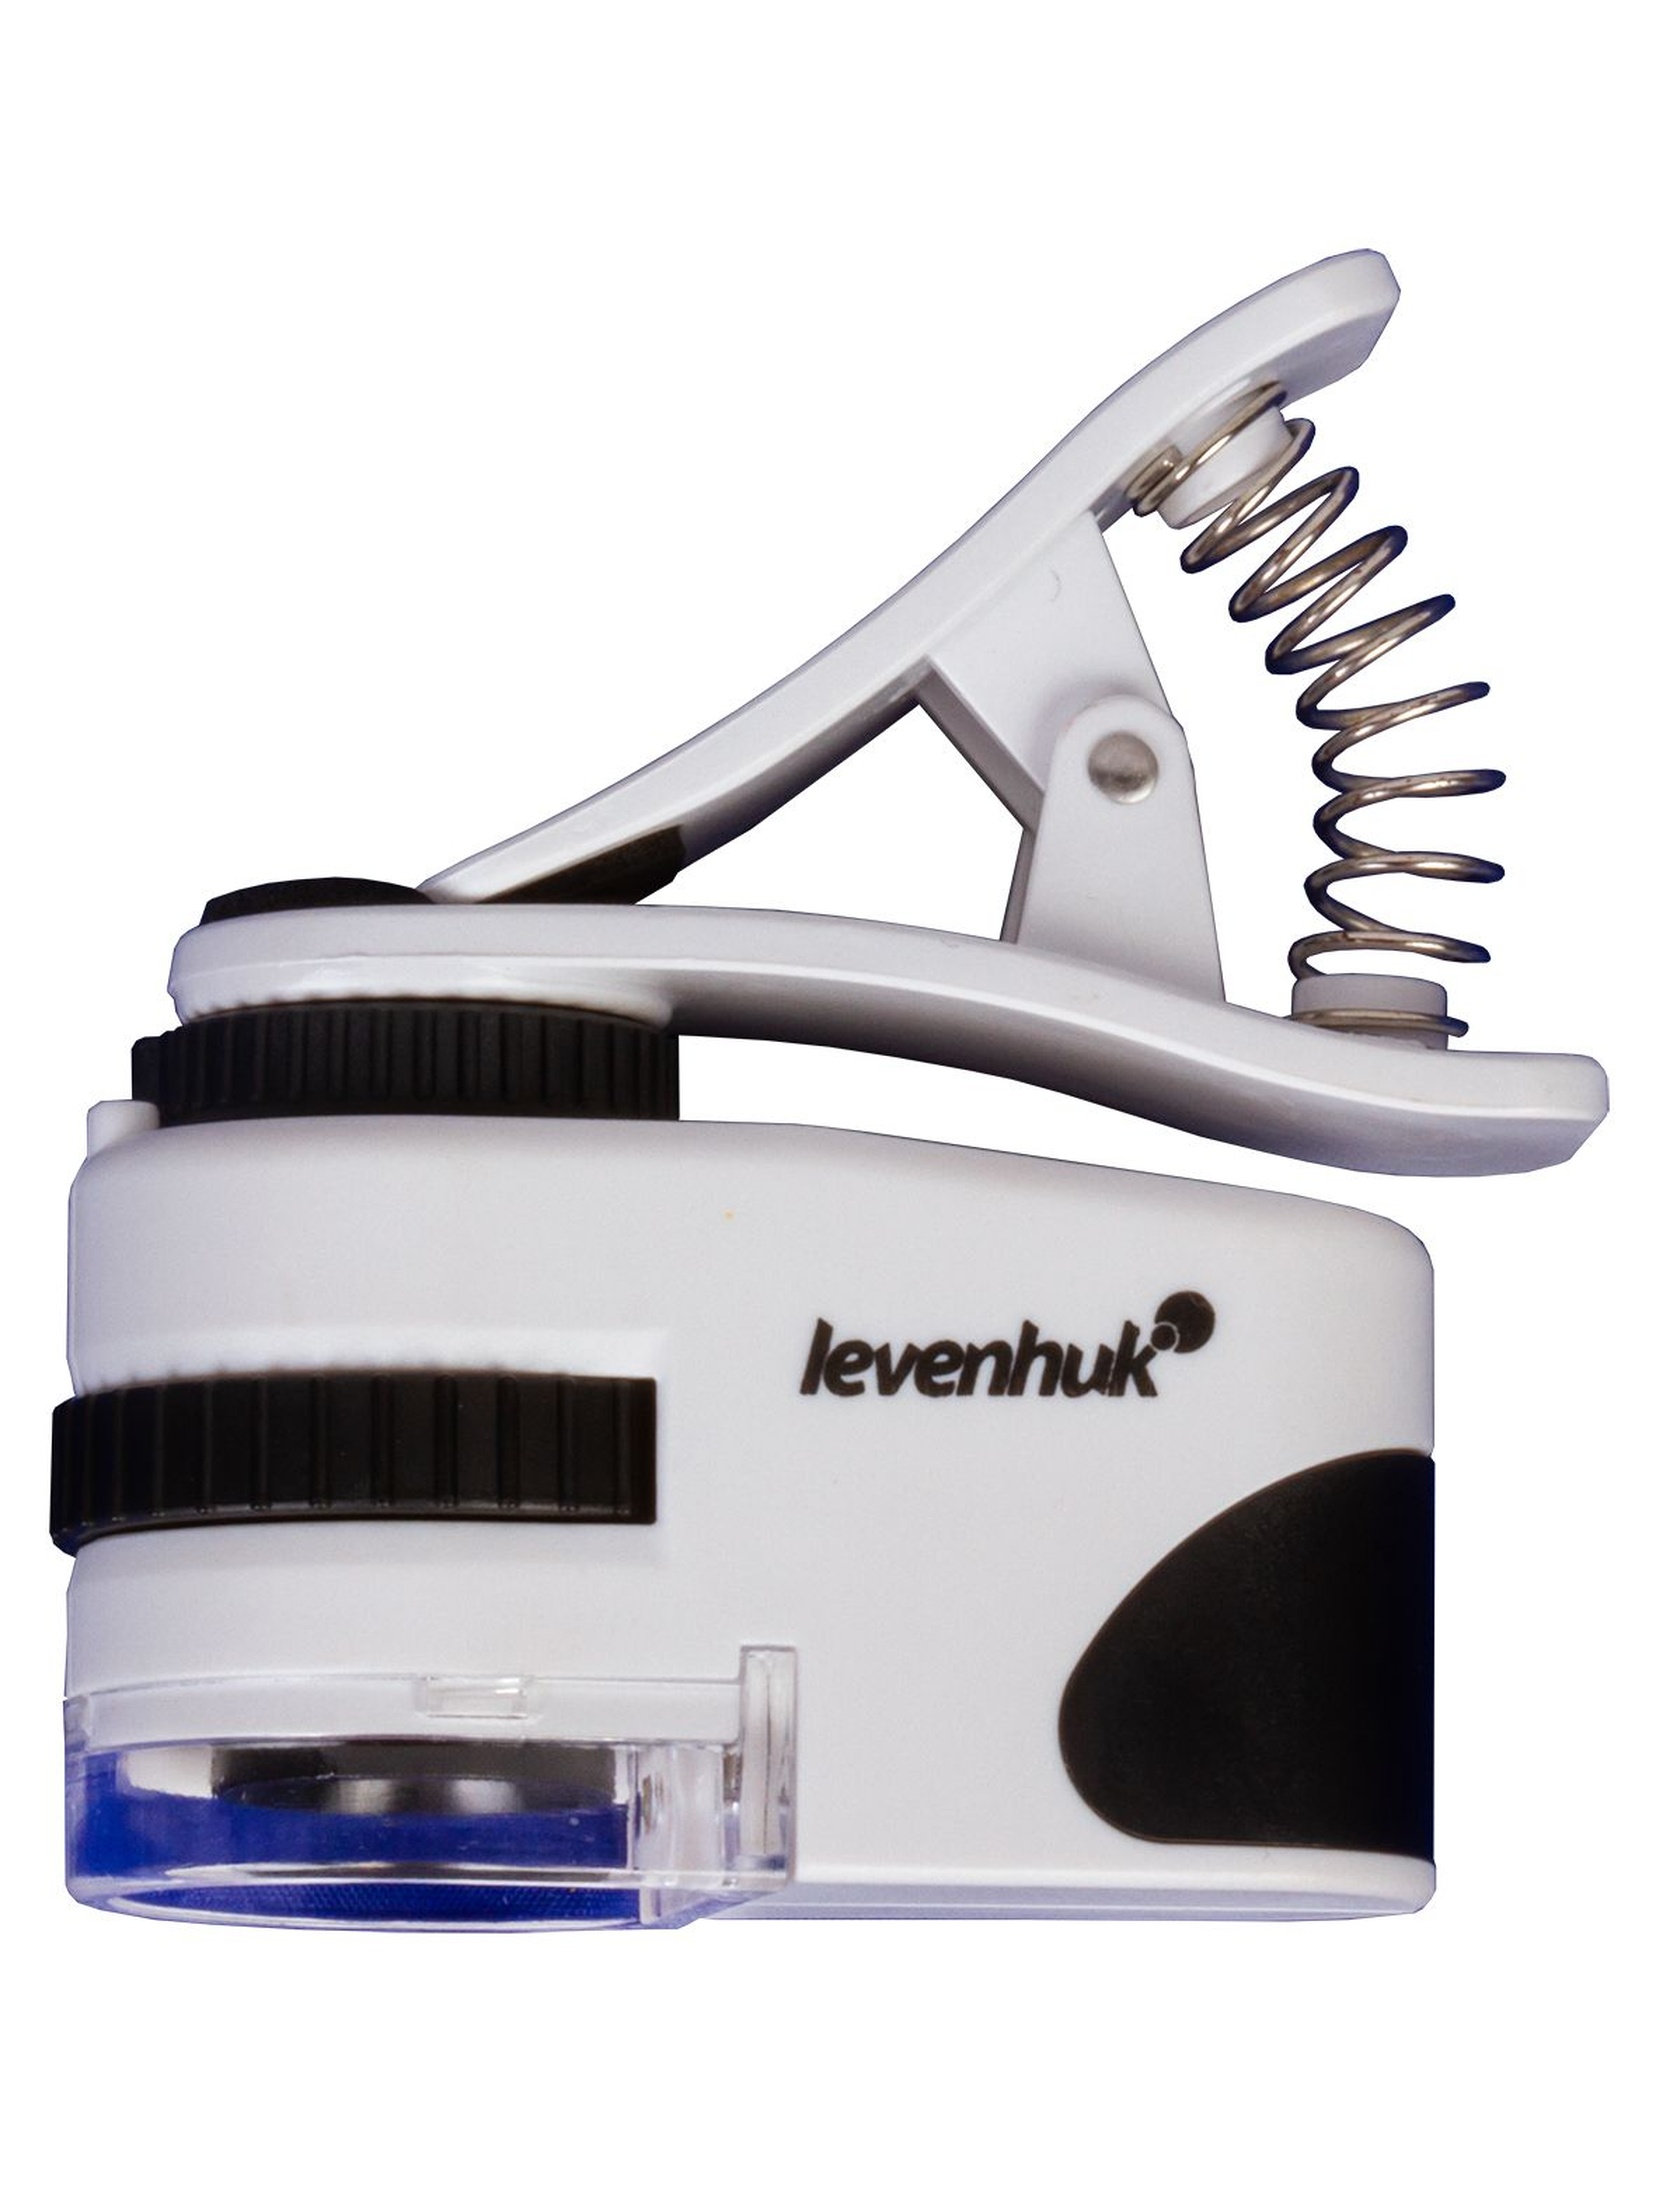 Mikroskop kieszonkowy Levenhuk Zeno Cash ZC6 - biały